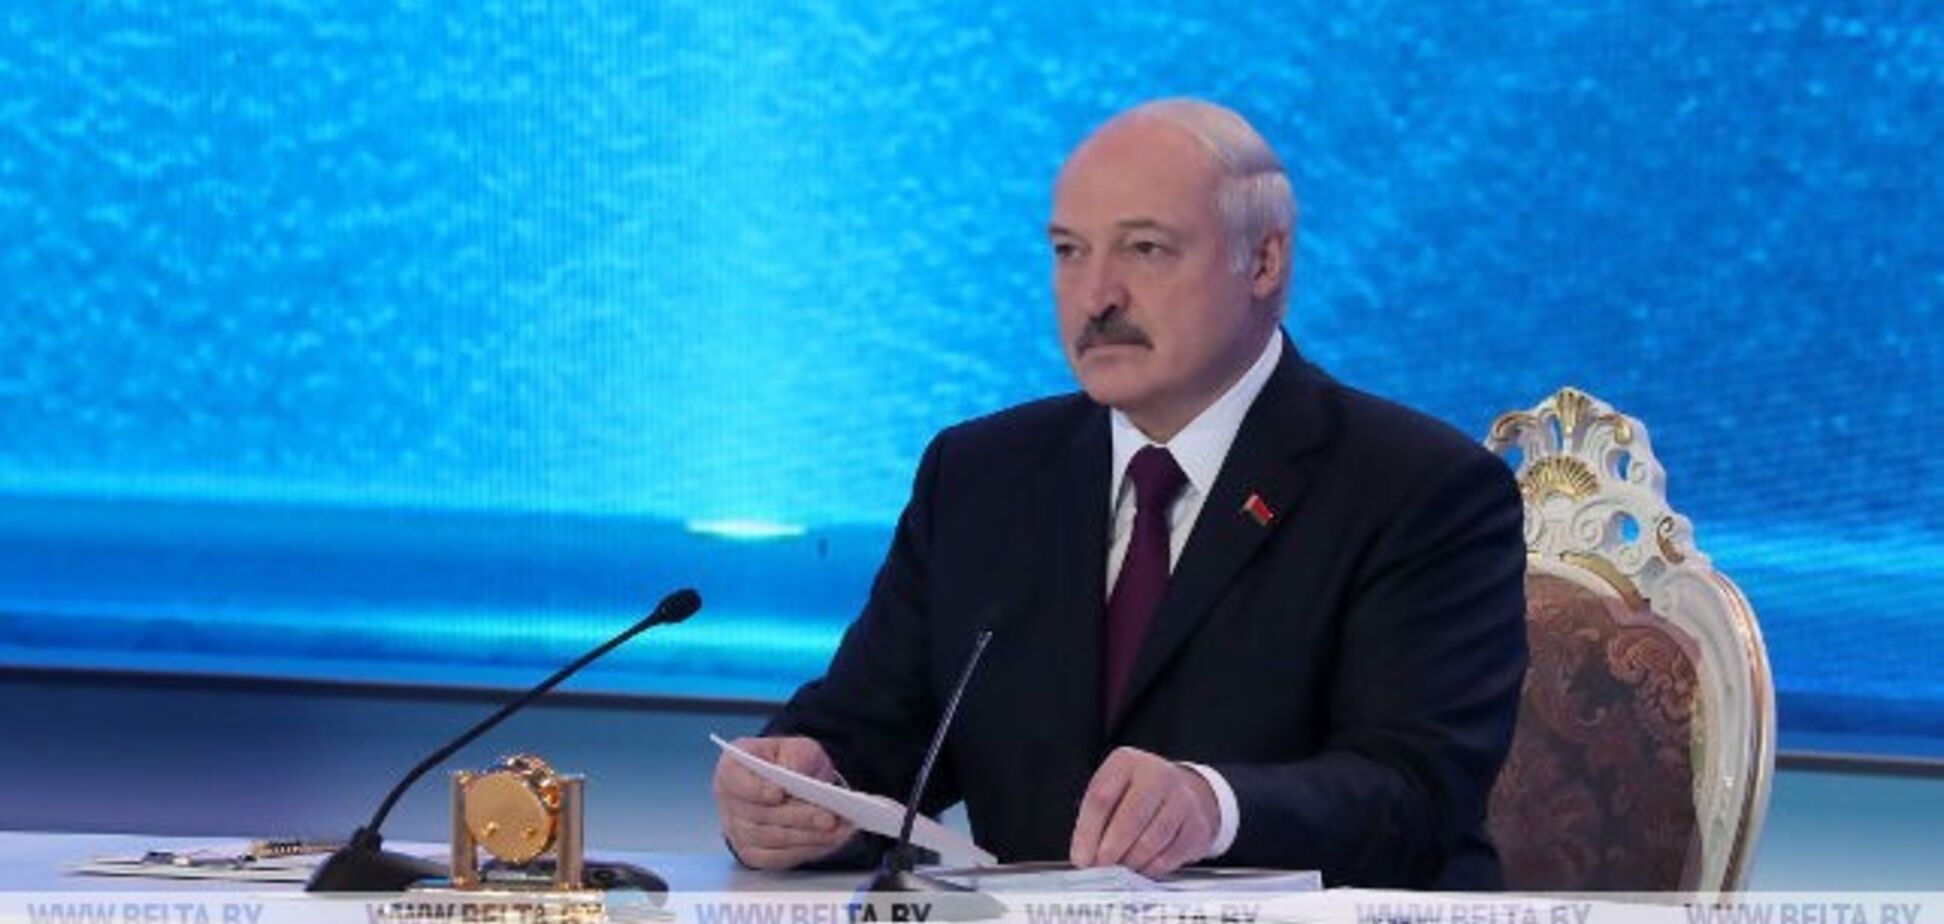 'Крым наш или российский?' Лукашенко хитро увильнул от ответа